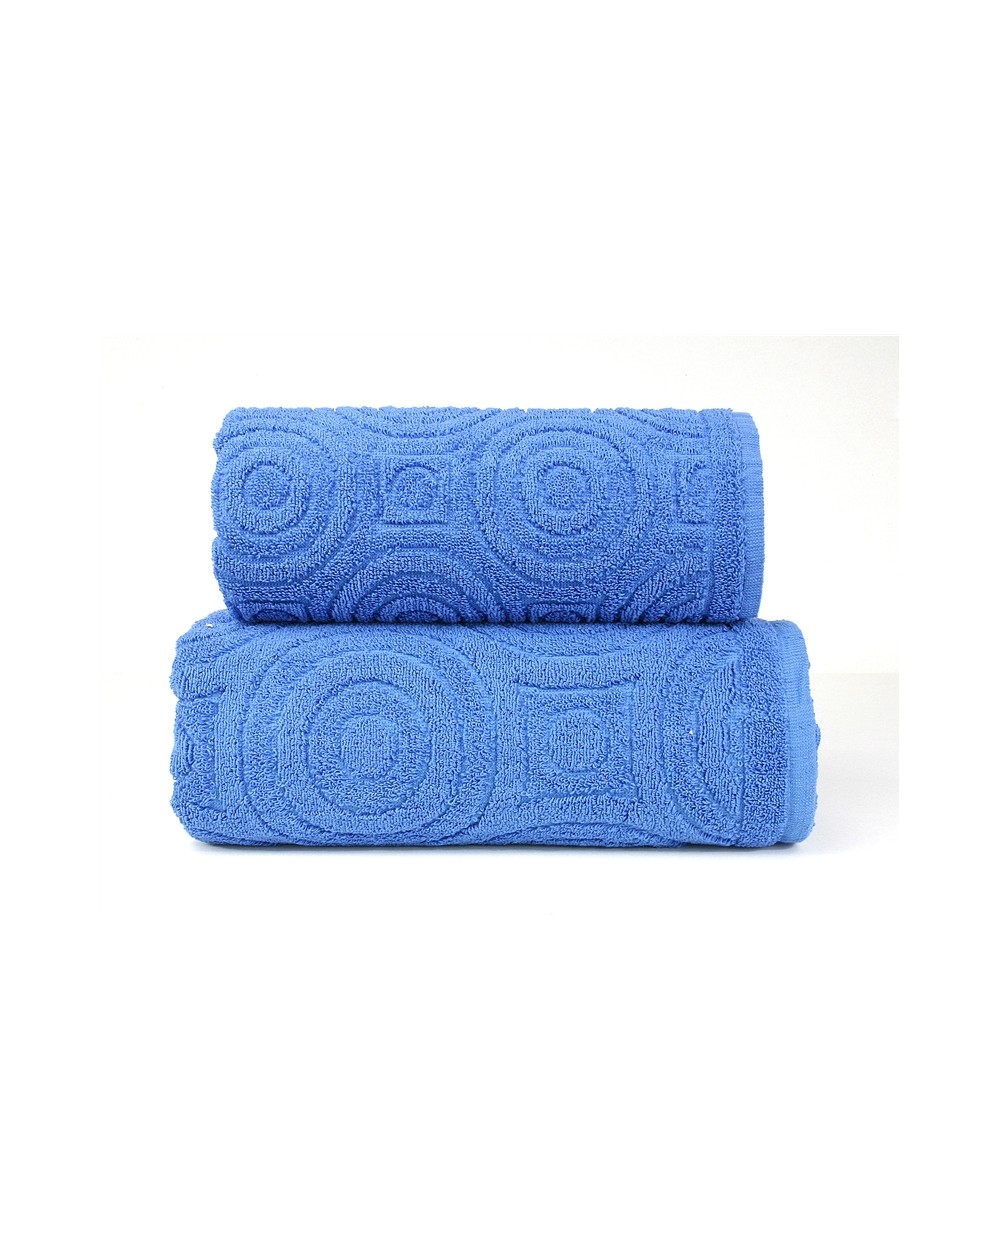 Ręcznik Emma 2 bawełna 50x100 niebieski